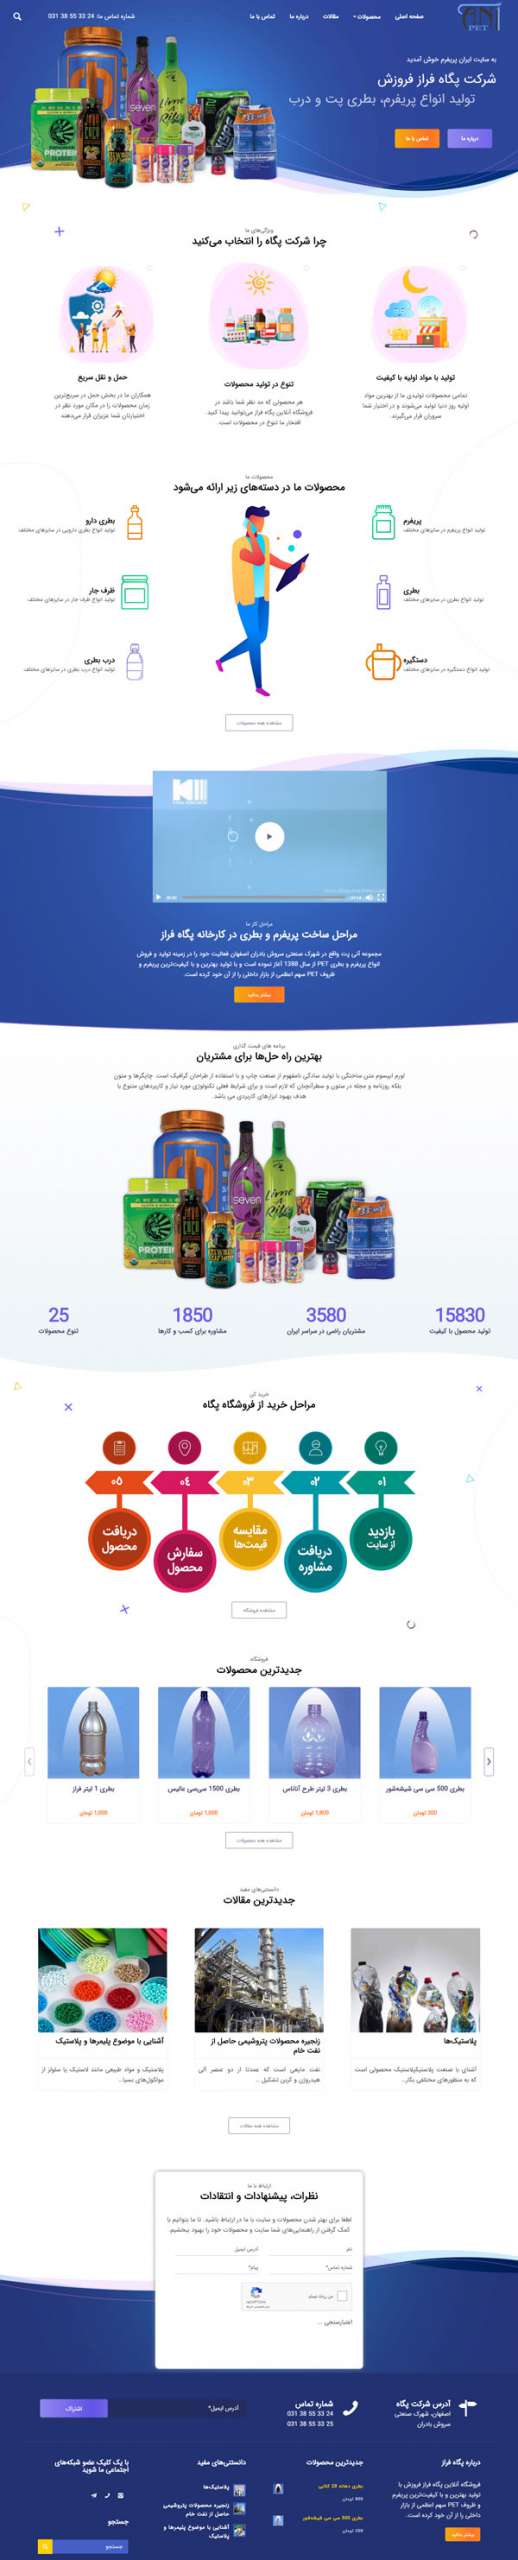 طراحی سایت ایران پریفرم (پگاه فراز فروزش) | تولید انواع بطری پت و پریفرم